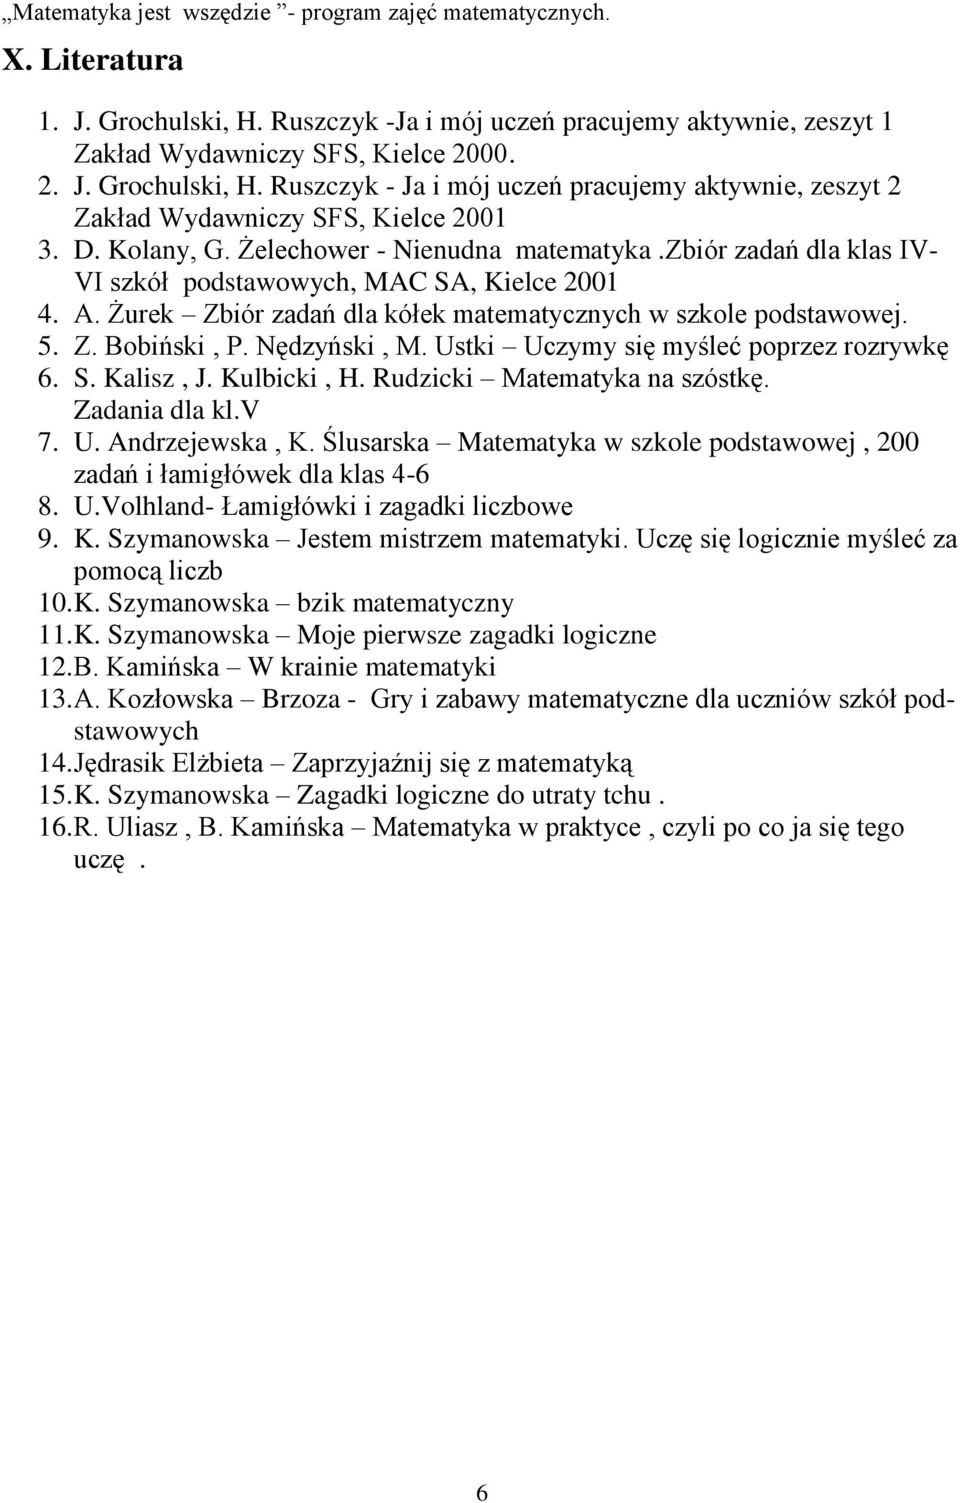 Nędzyński, M. Ustki Uczymy się myśleć poprzez rozrywkę 6. S. Kalisz, J. Kulbicki, H. Rudzicki Matematyka na szóstkę. Zadania dla kl.v 7. U. Andrzejewska, K.